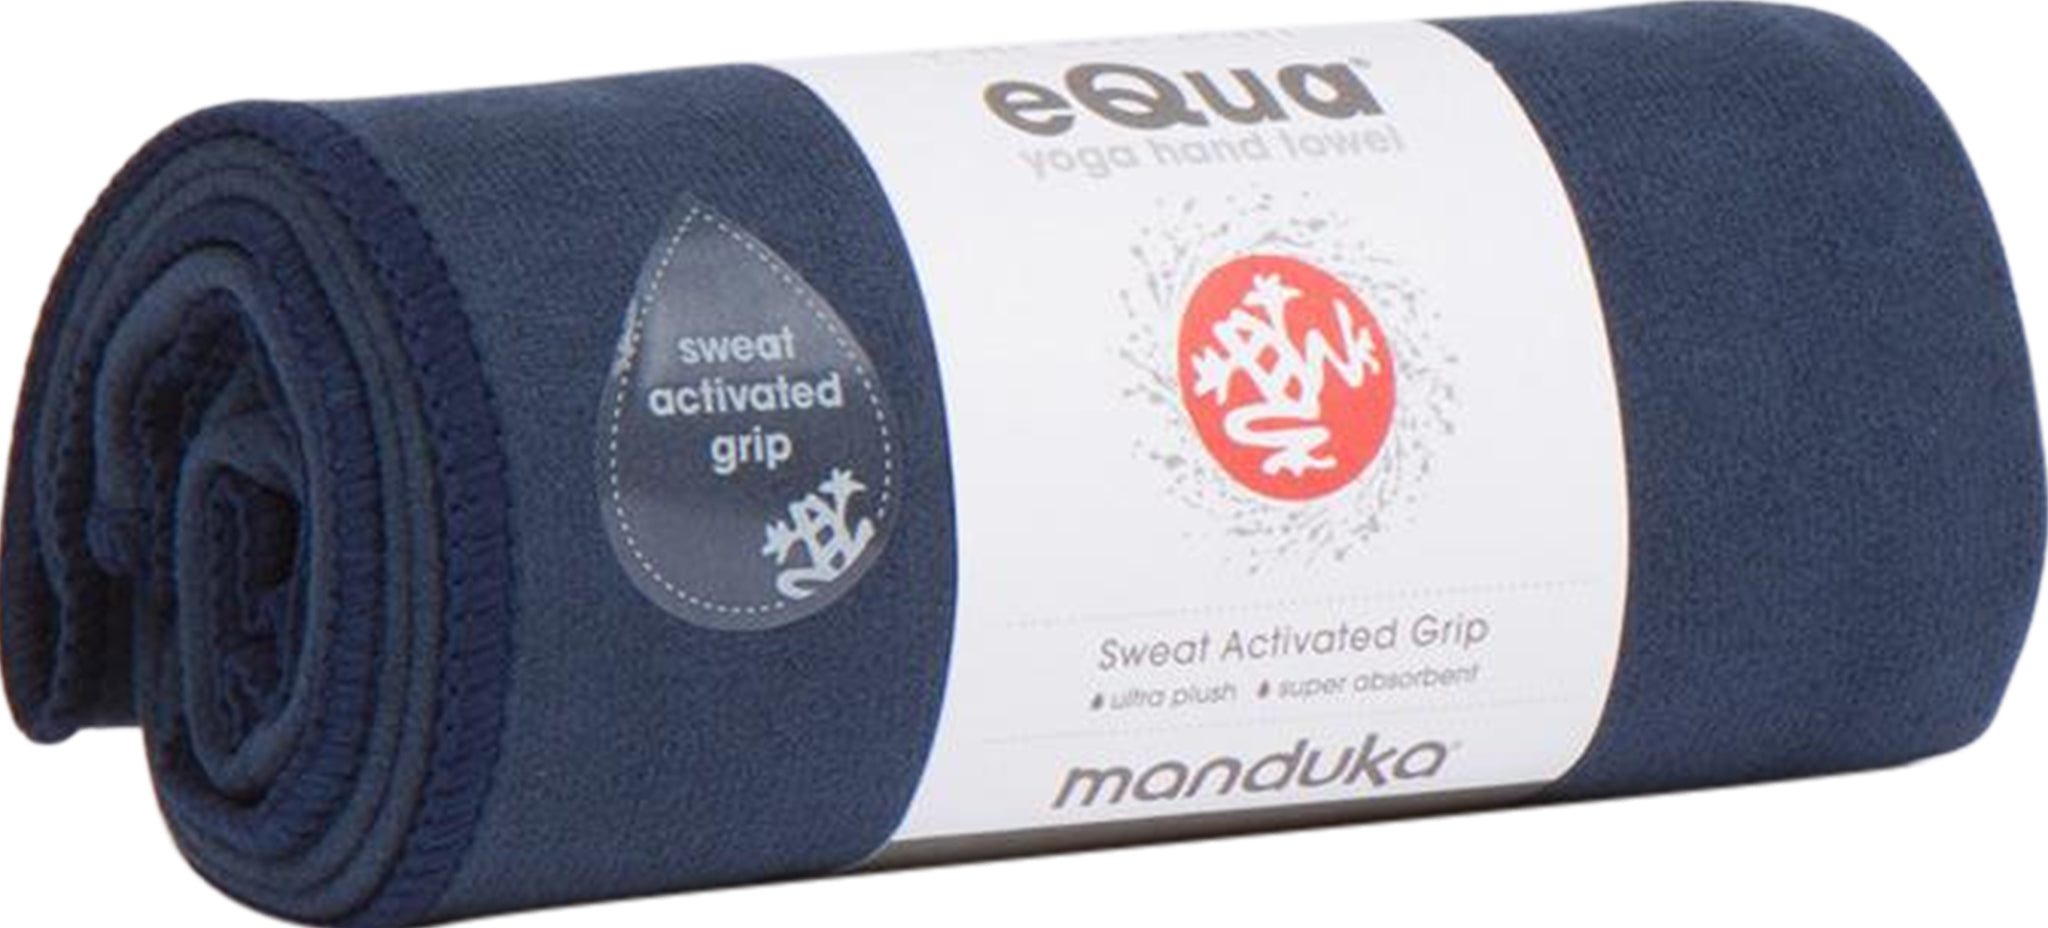 High Quality Yoga Hand Towel - eQua®